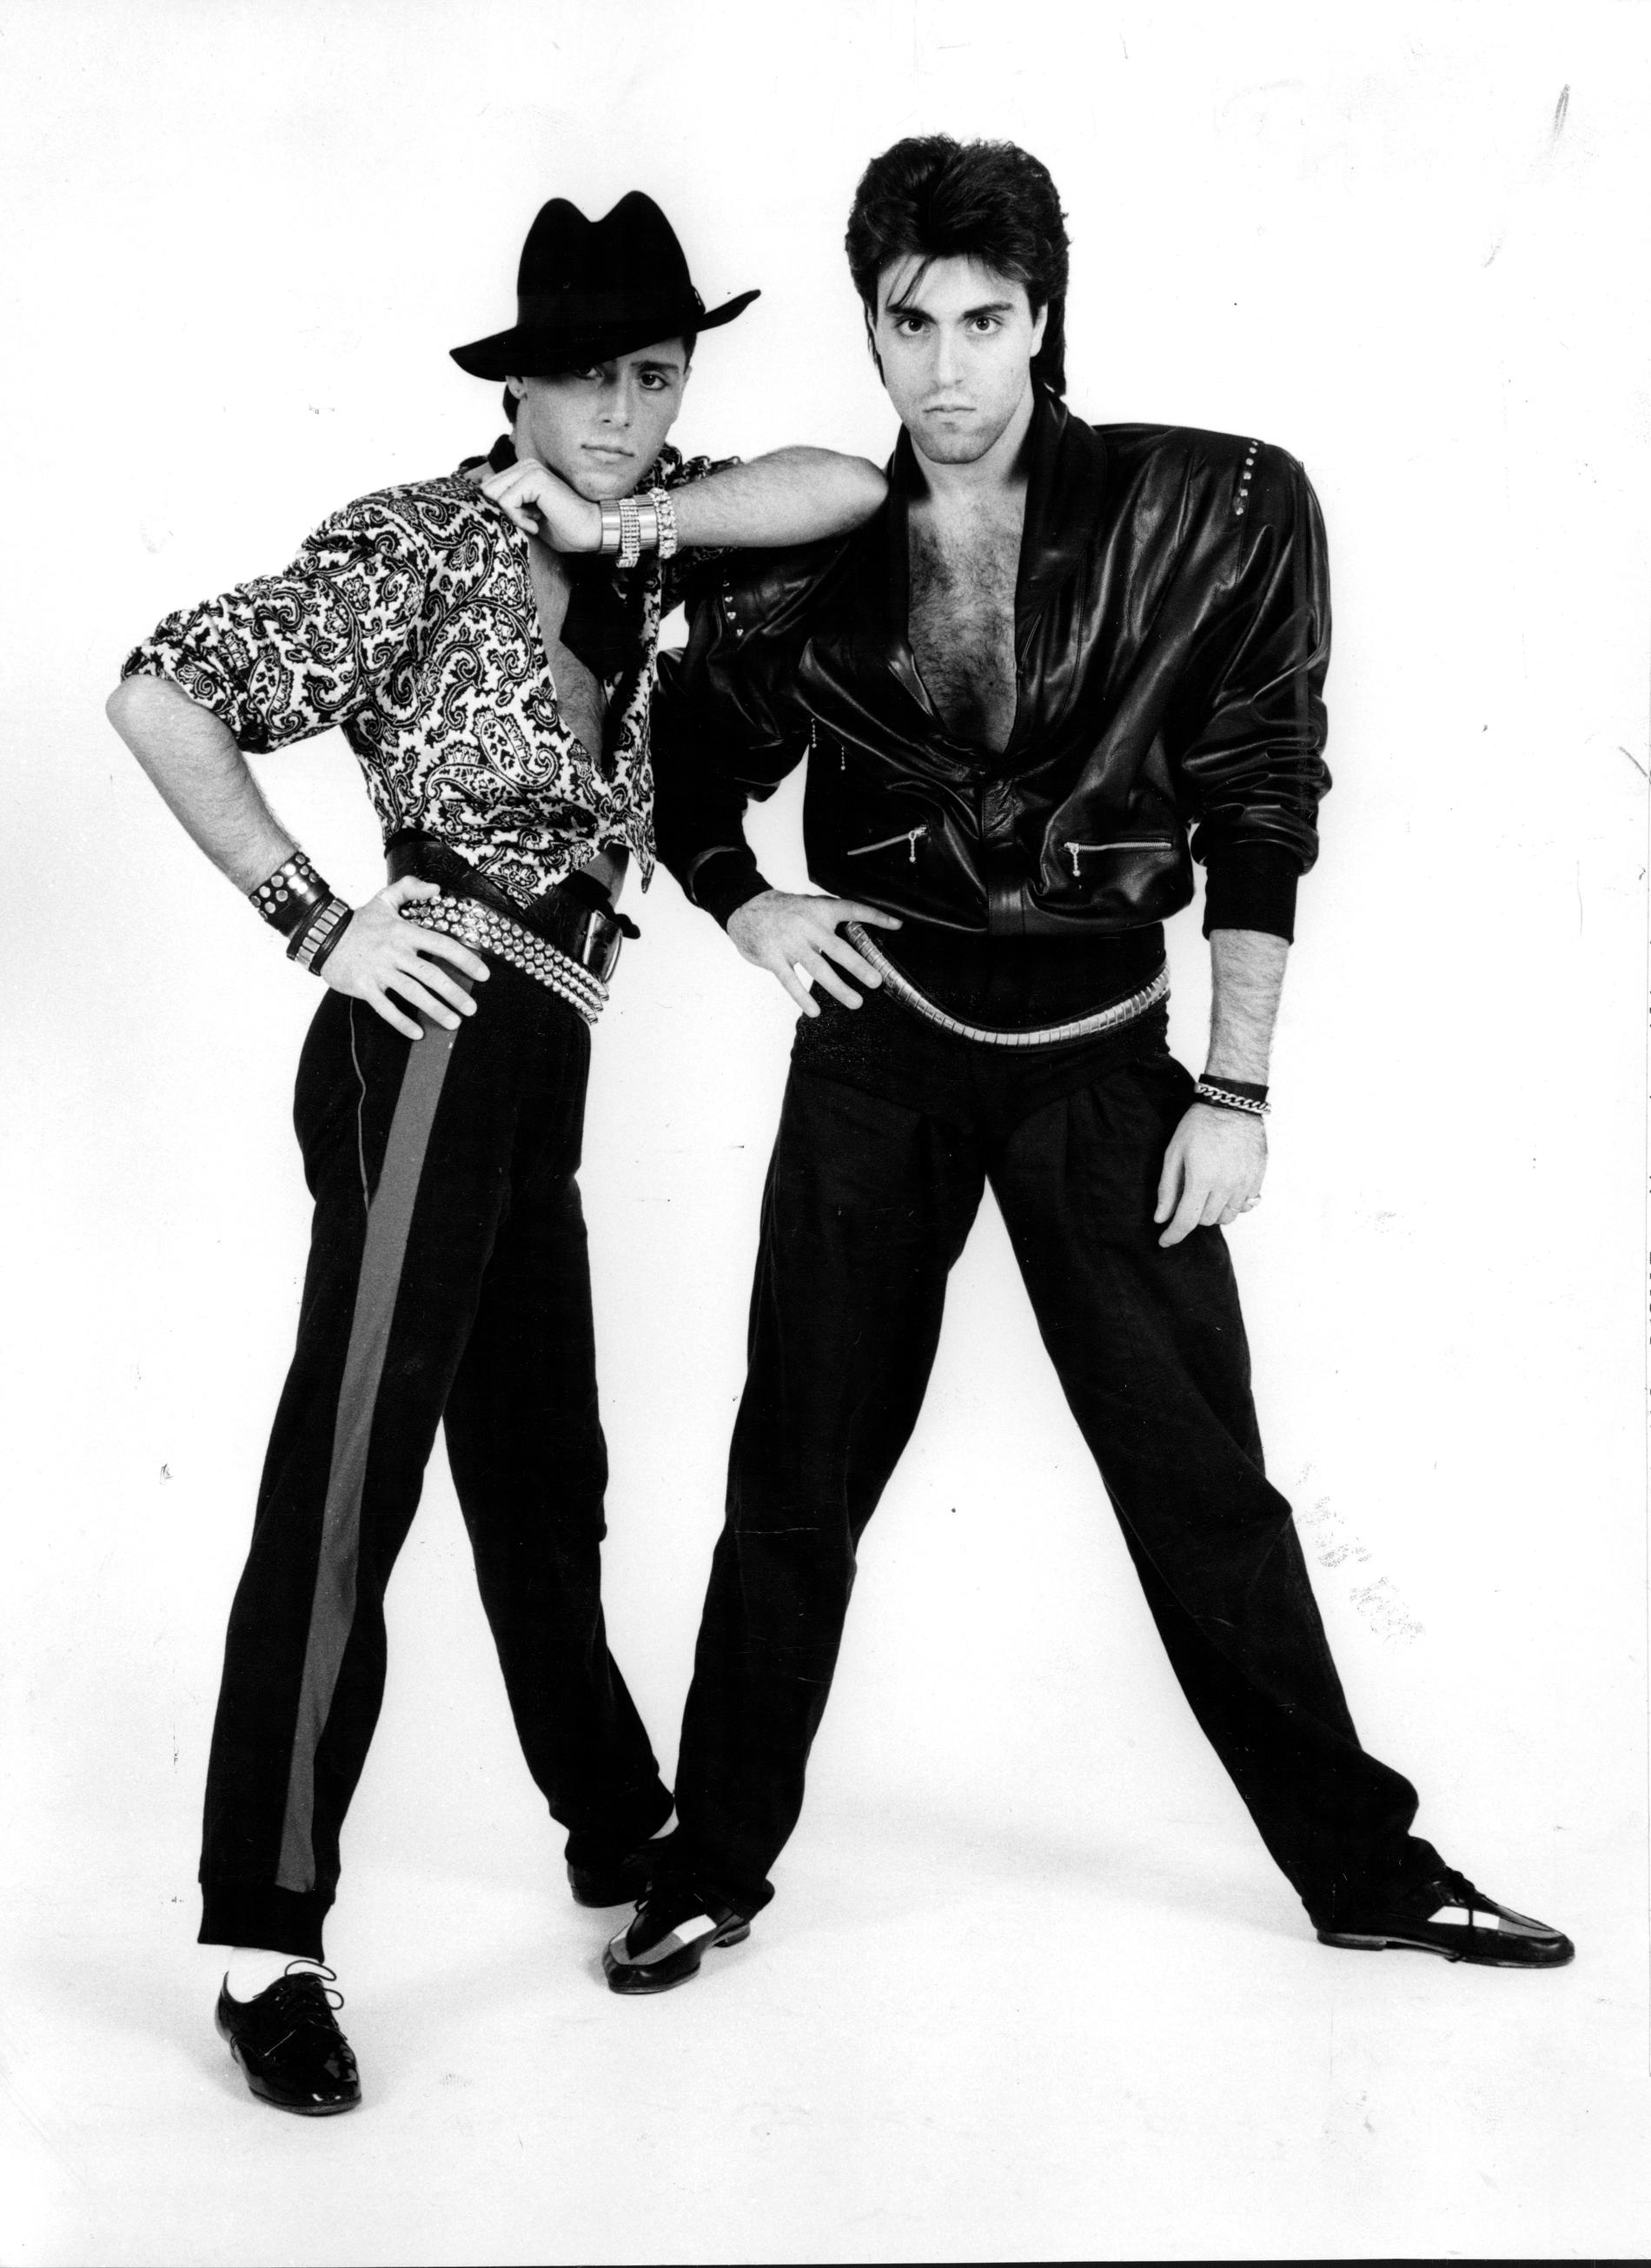 Emilio och Vito Ingrosso efter genombrottet som dansare 1985.